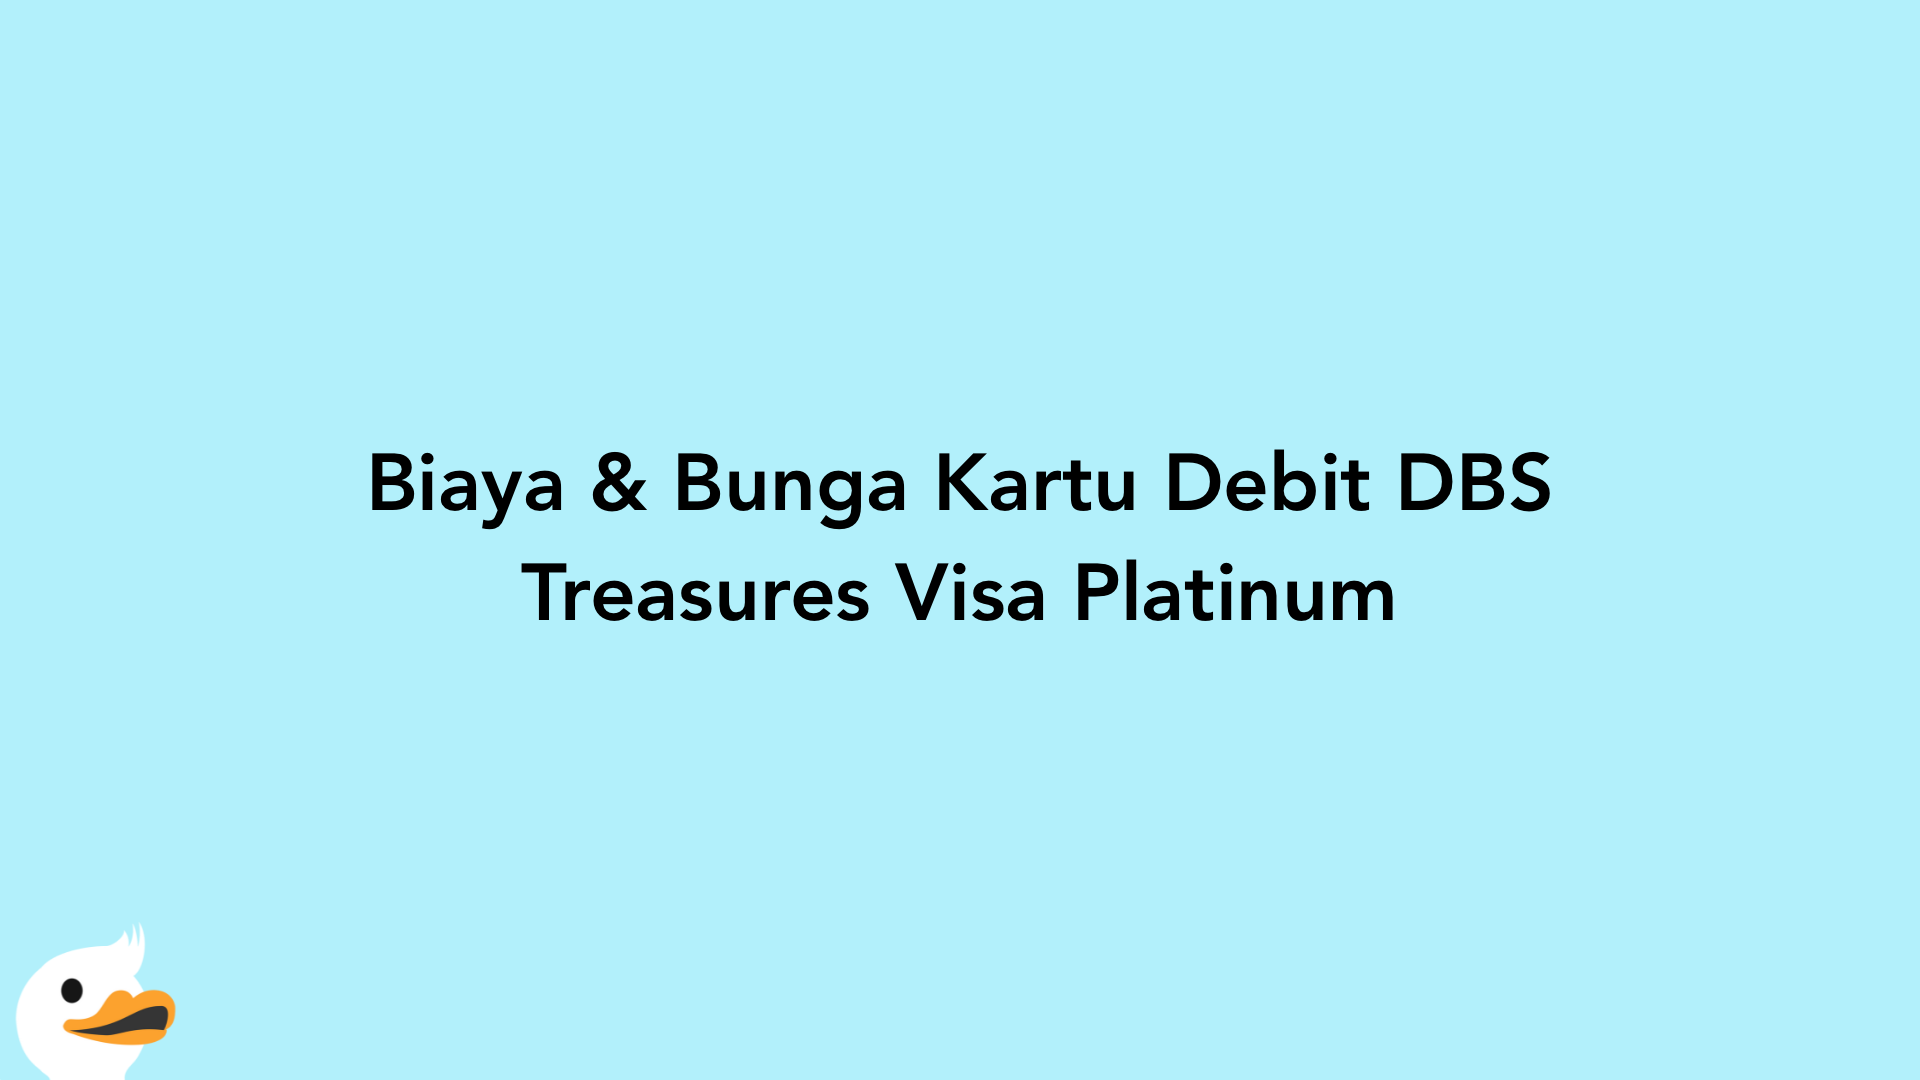 Biaya & Bunga Kartu Debit DBS Treasures Visa Platinum